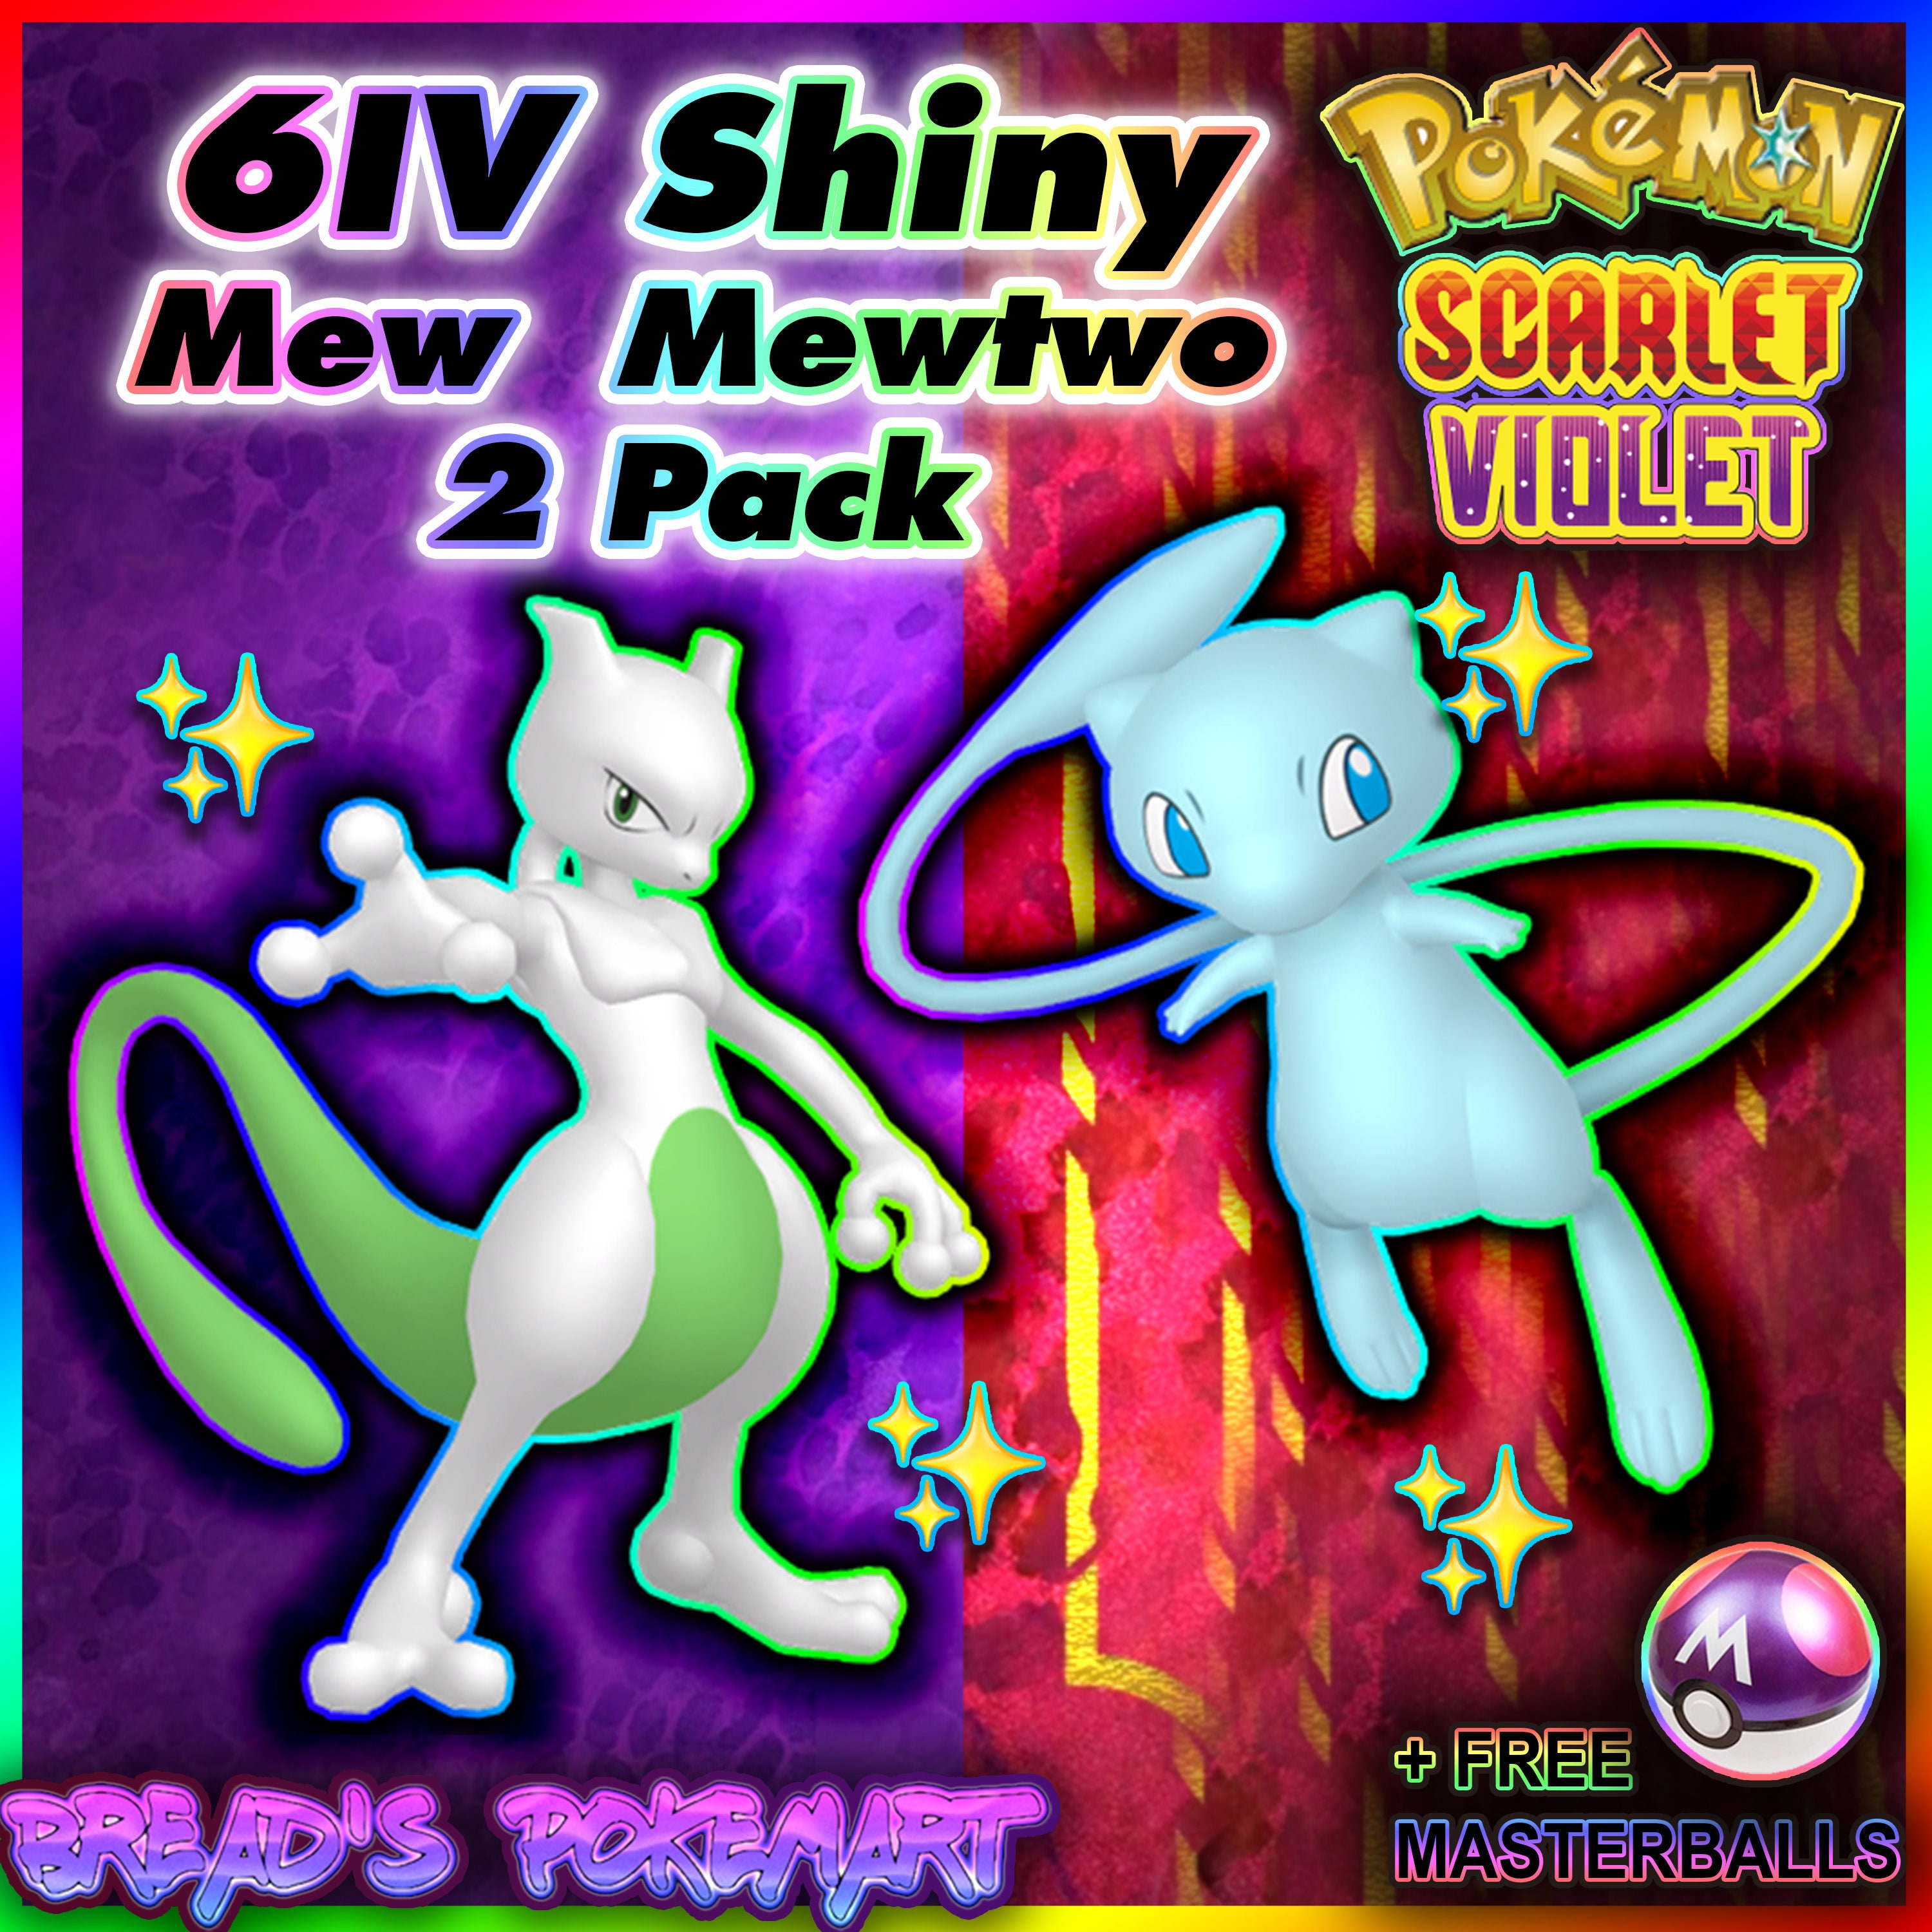 How to Draw Shiny Mewtwo, Pokemon Go